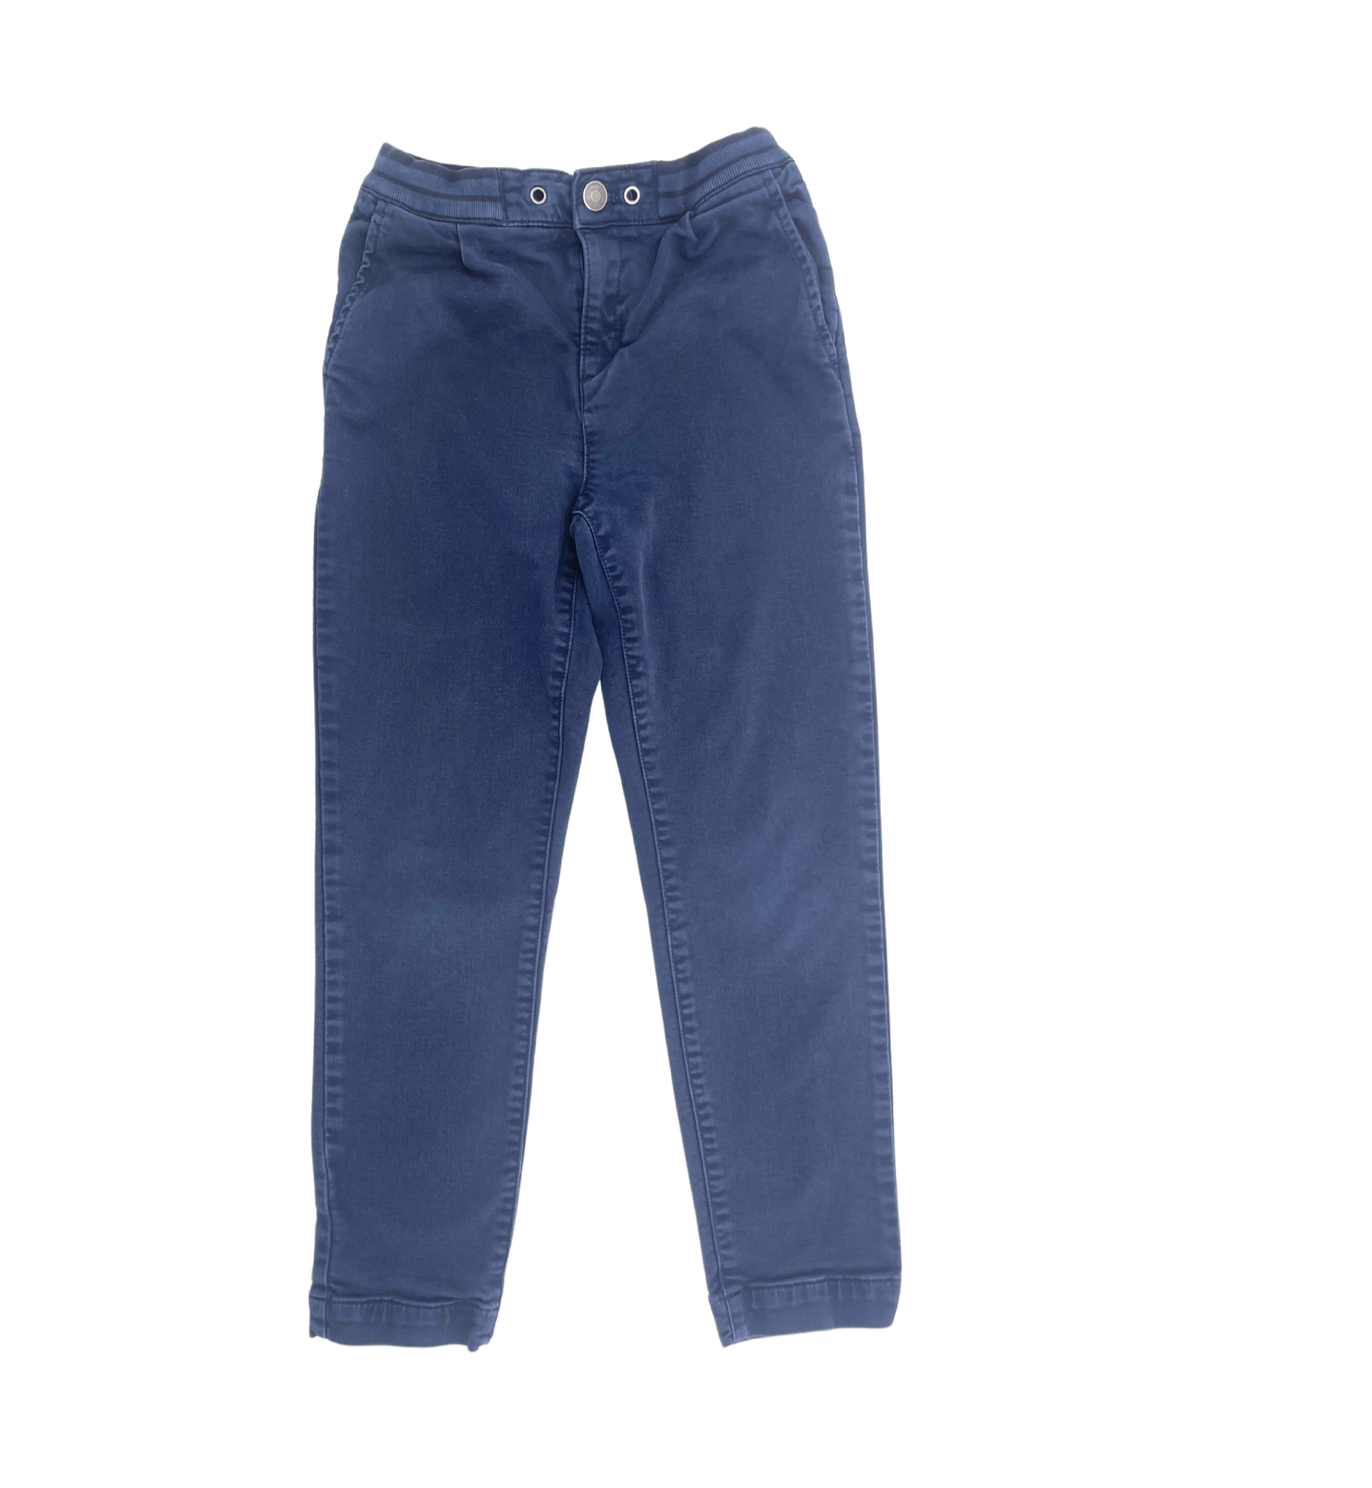 CYRILLUS - Pantalon bleu marine - 10 ans